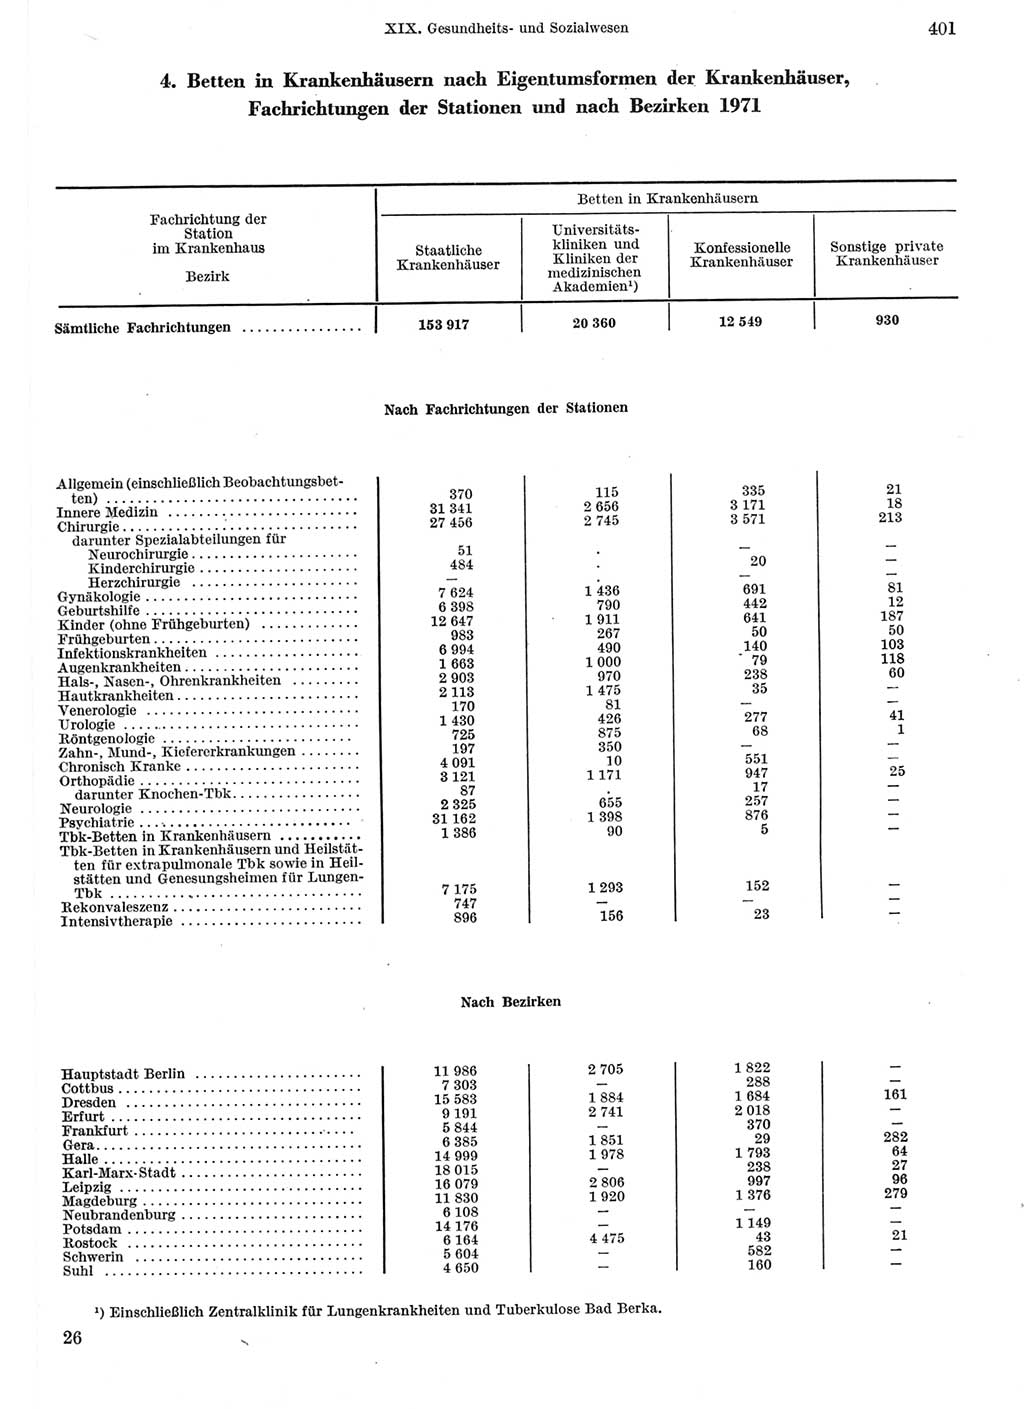 Statistisches Jahrbuch der Deutschen Demokratischen Republik (DDR) 1973, Seite 401 (Stat. Jb. DDR 1973, S. 401)